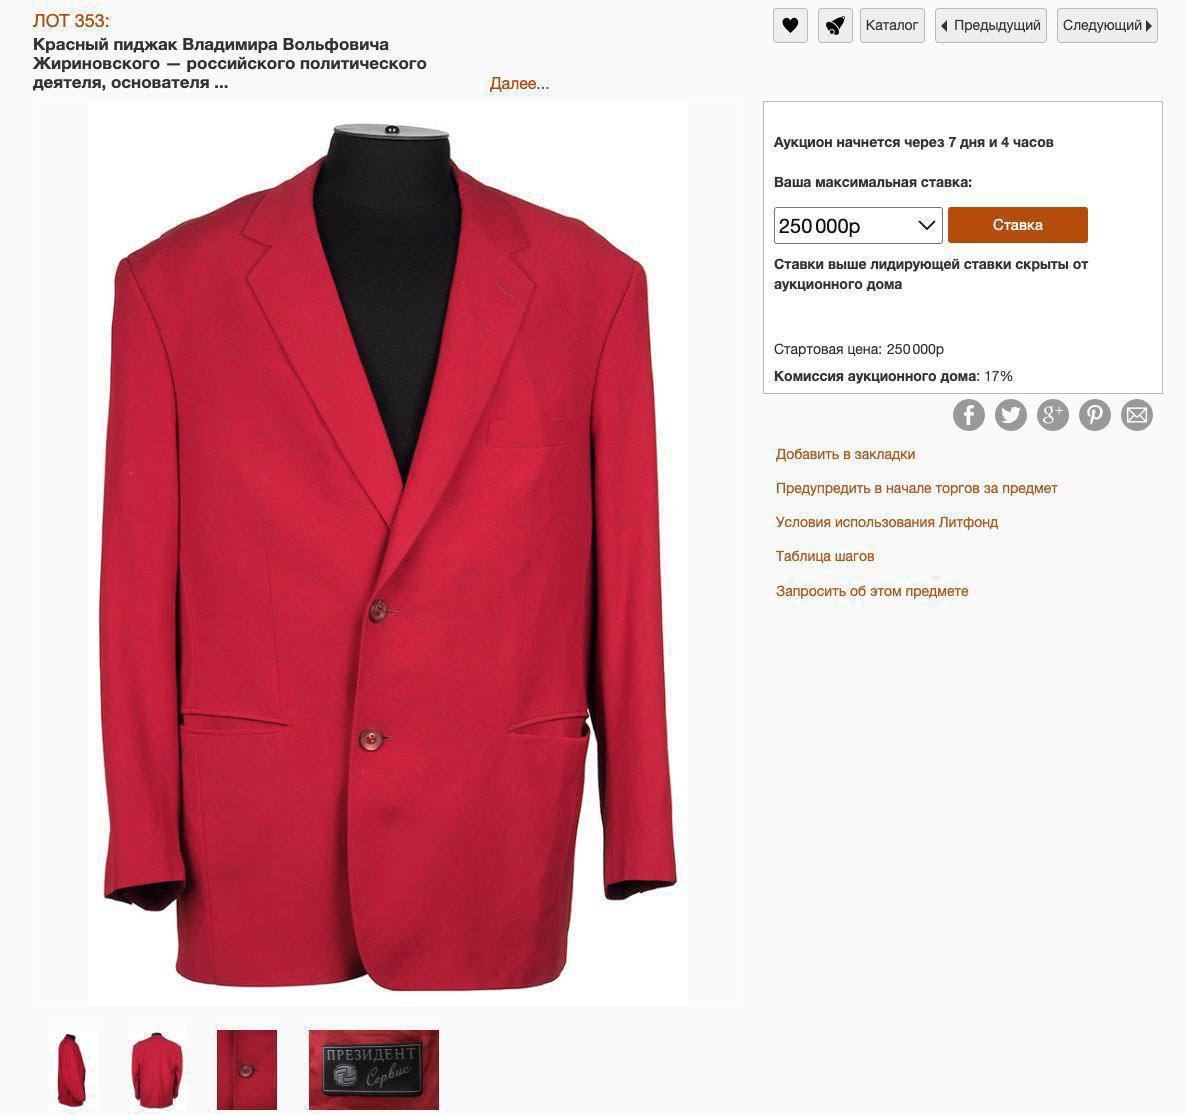 Красный пиджак Владимира Жириновского выставили на аукционе